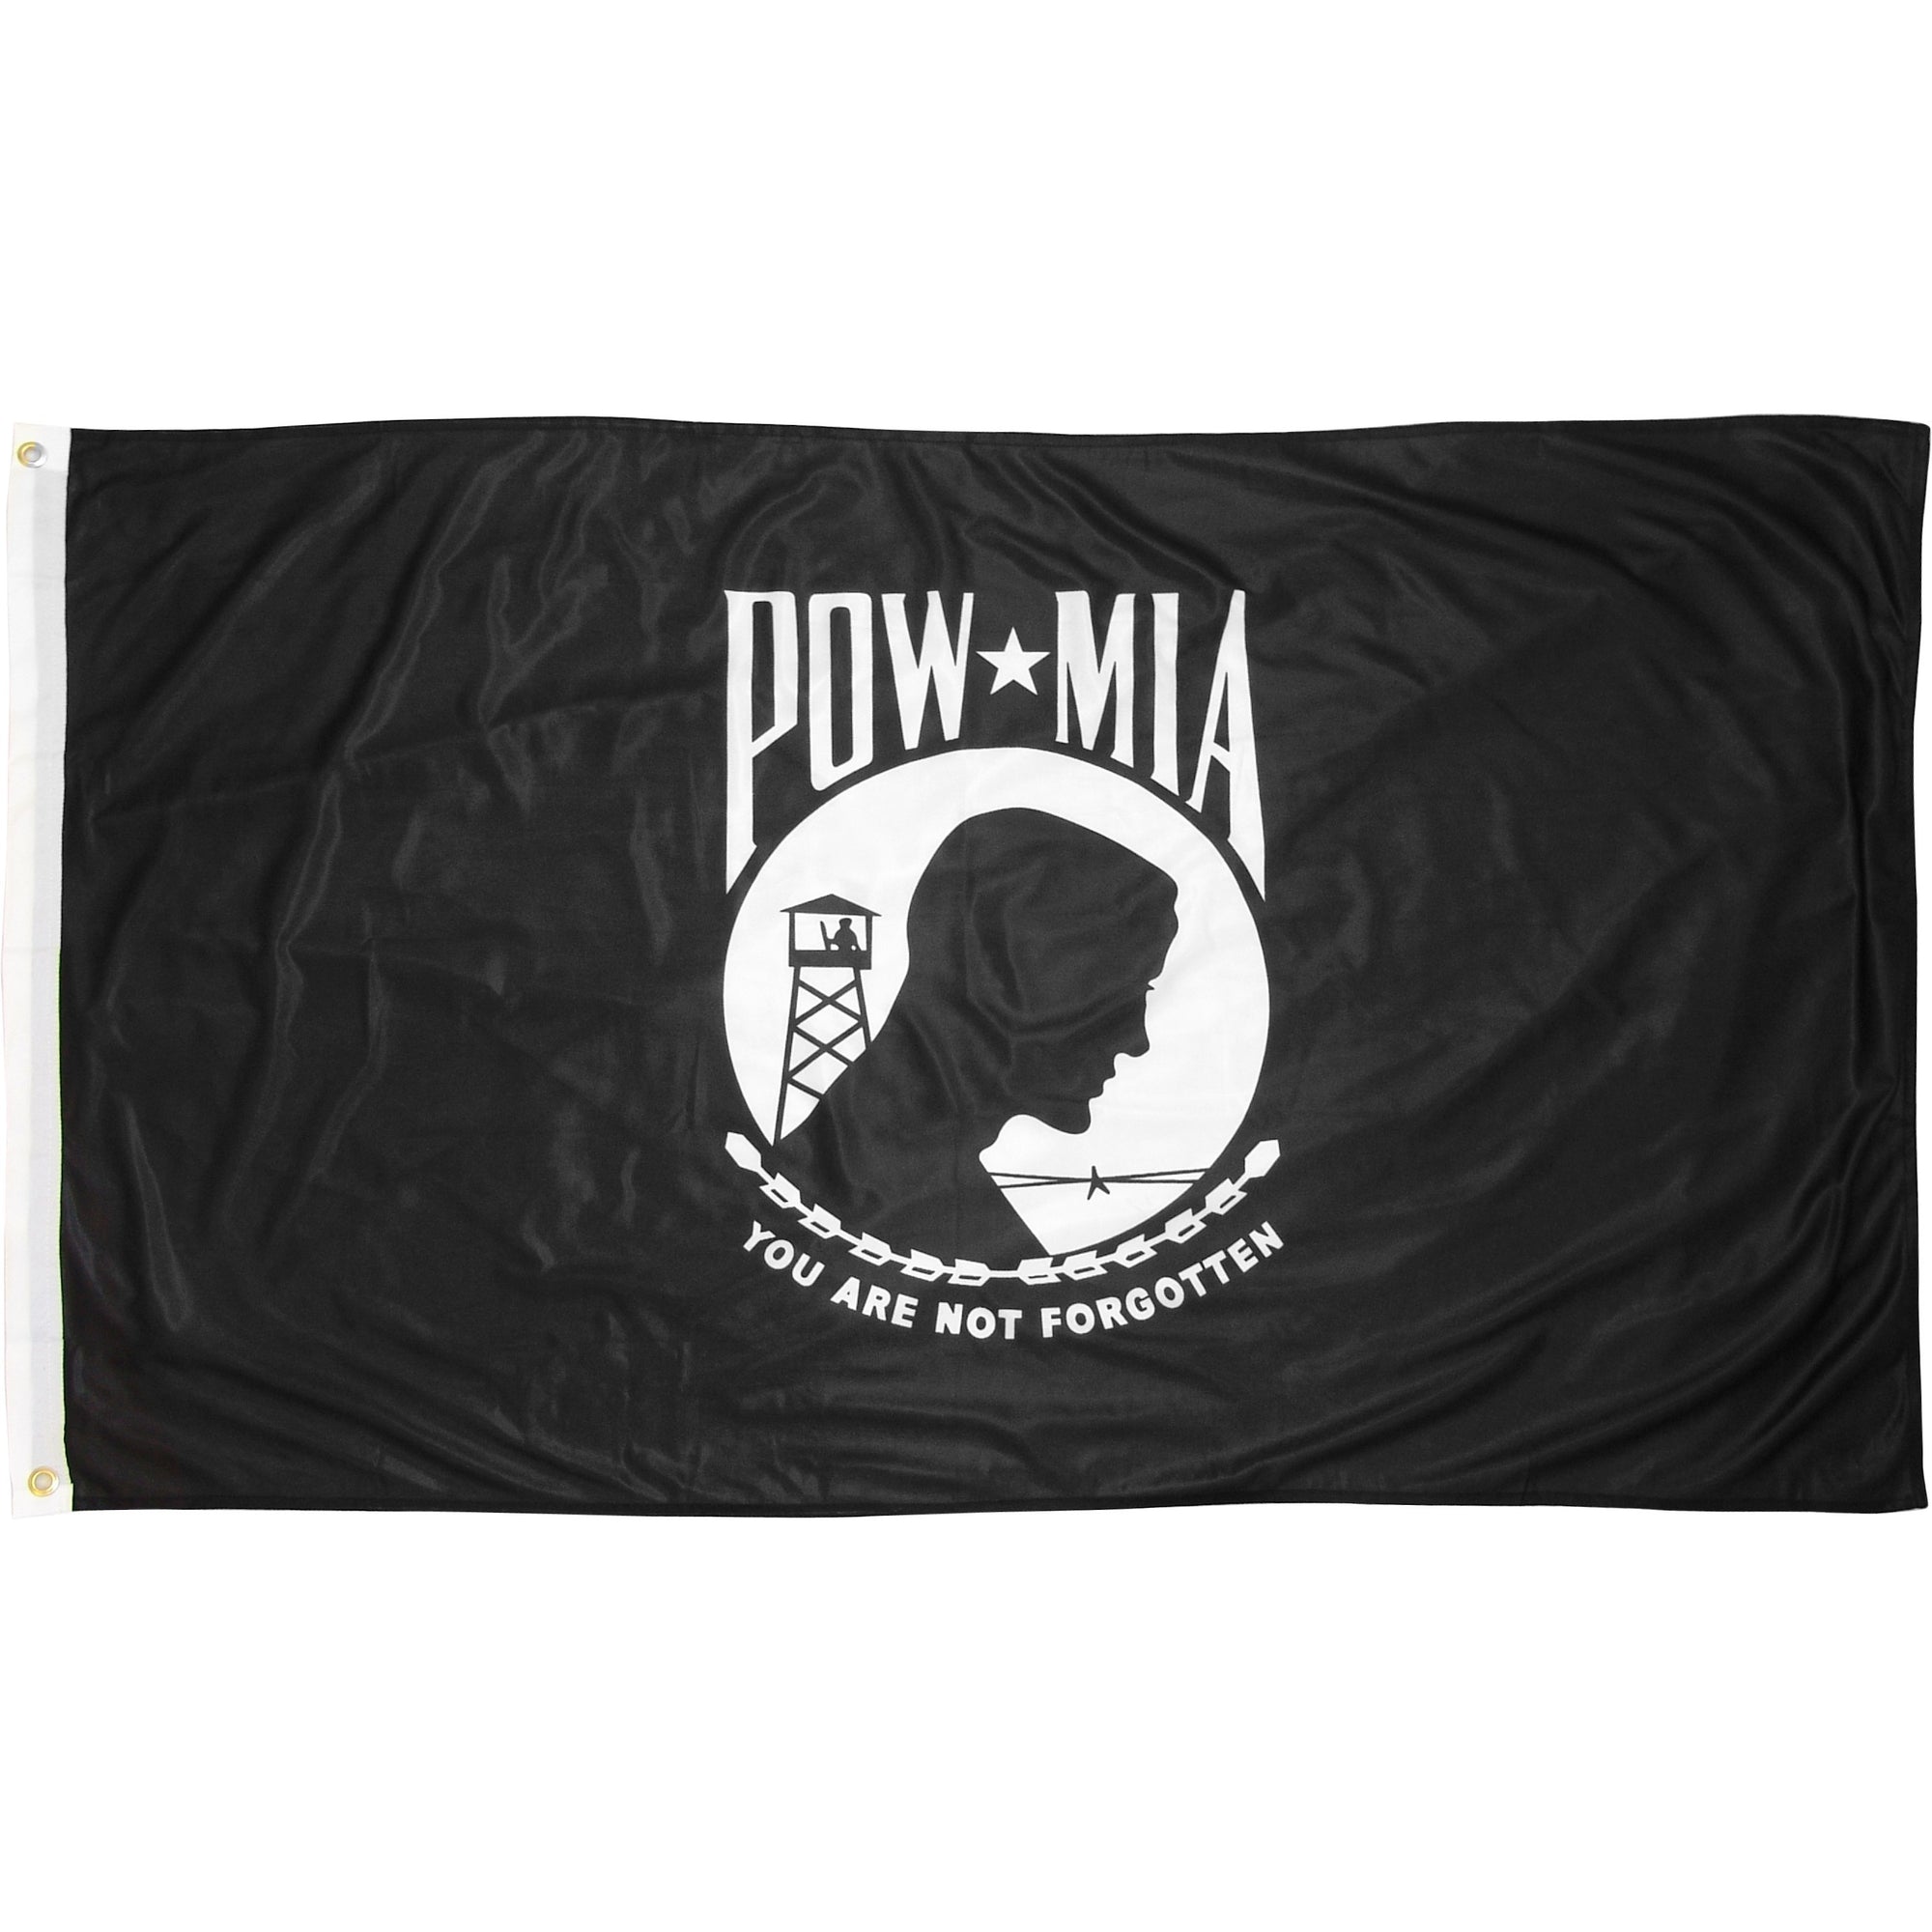 Eder POW-MIA 4' x 6' Outdoor Nylon Flags